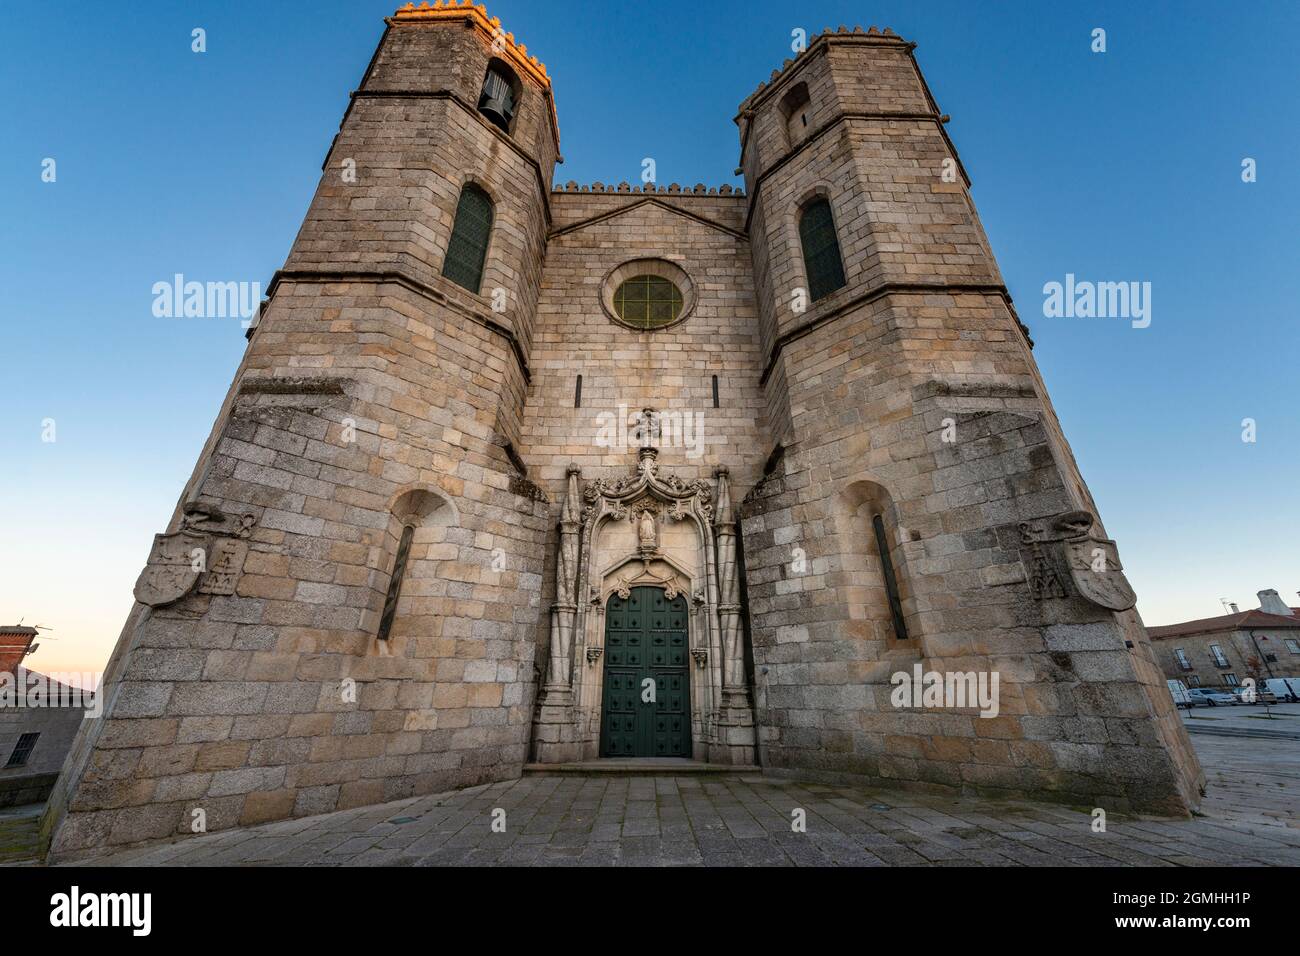 Vista de la entrada principal de estilo manuelino de la Catedral de Guarda (SE da Guarda) en la ciudad de Guarda, Portugal. Foto de stock